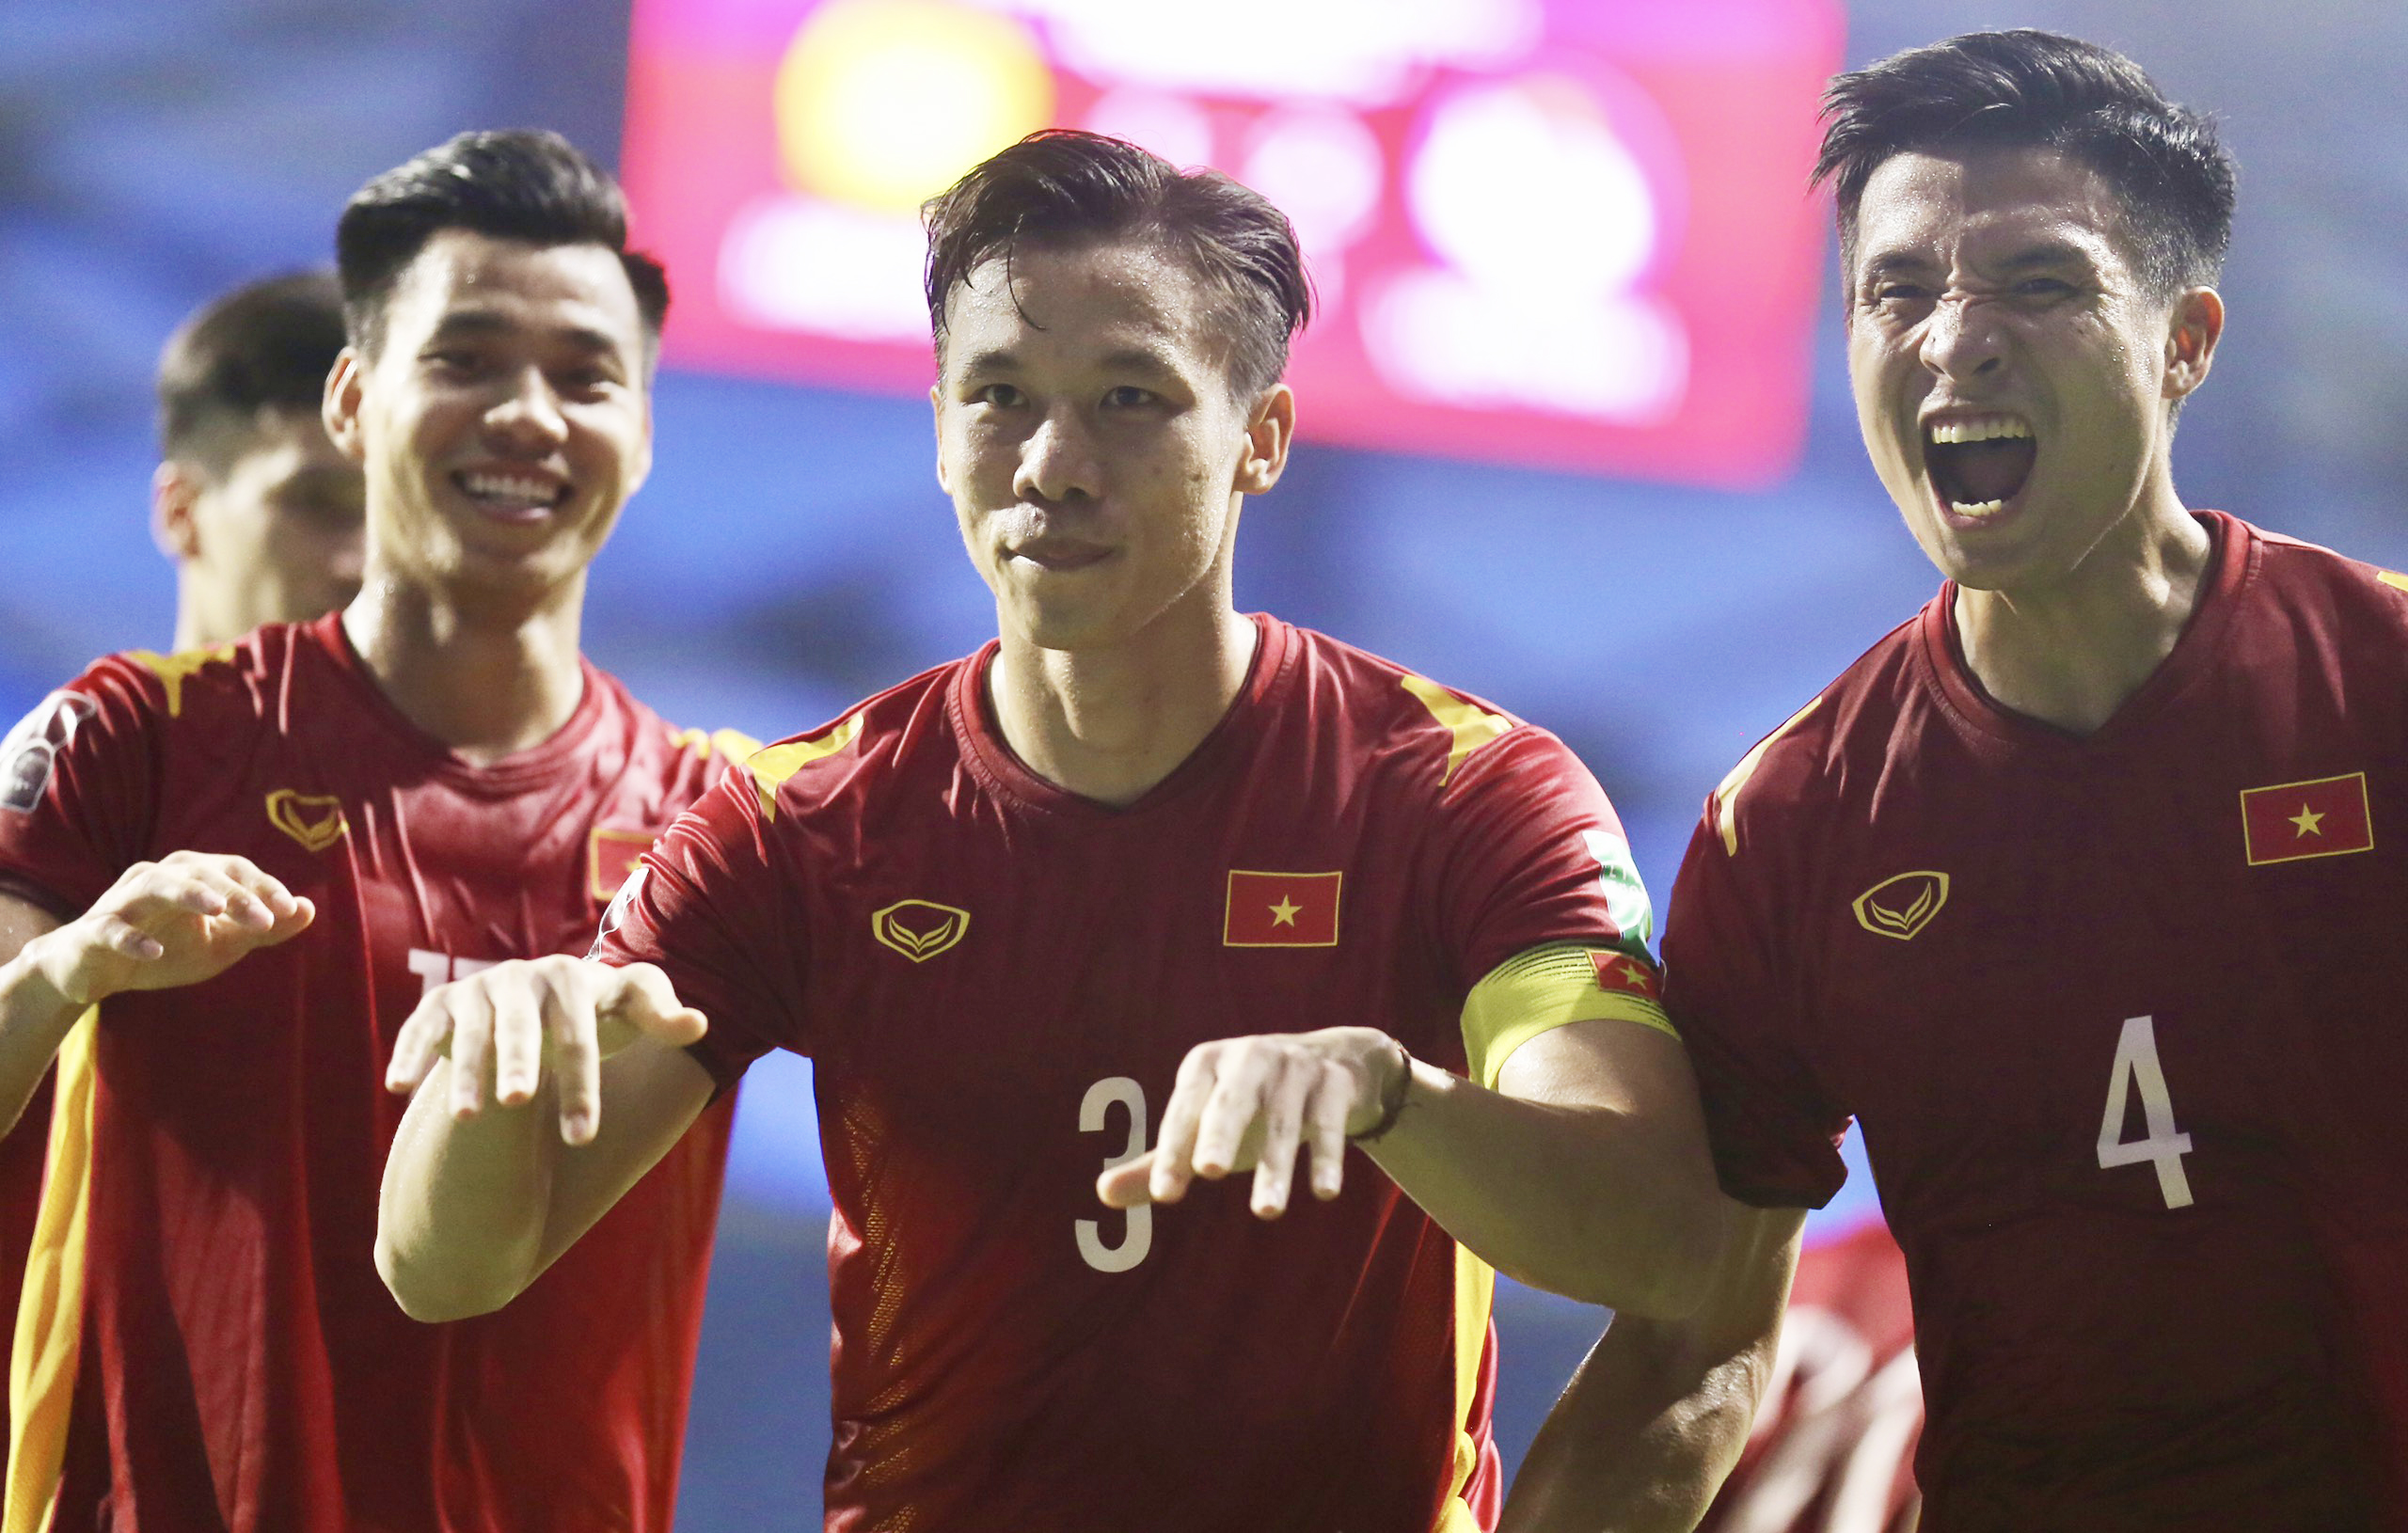 Đối thủ của ĐT Việt Nam lách luật FIFA, trụ cột đội bóng La Liga 'nổi loạn' để tập trung ĐTQG sớm